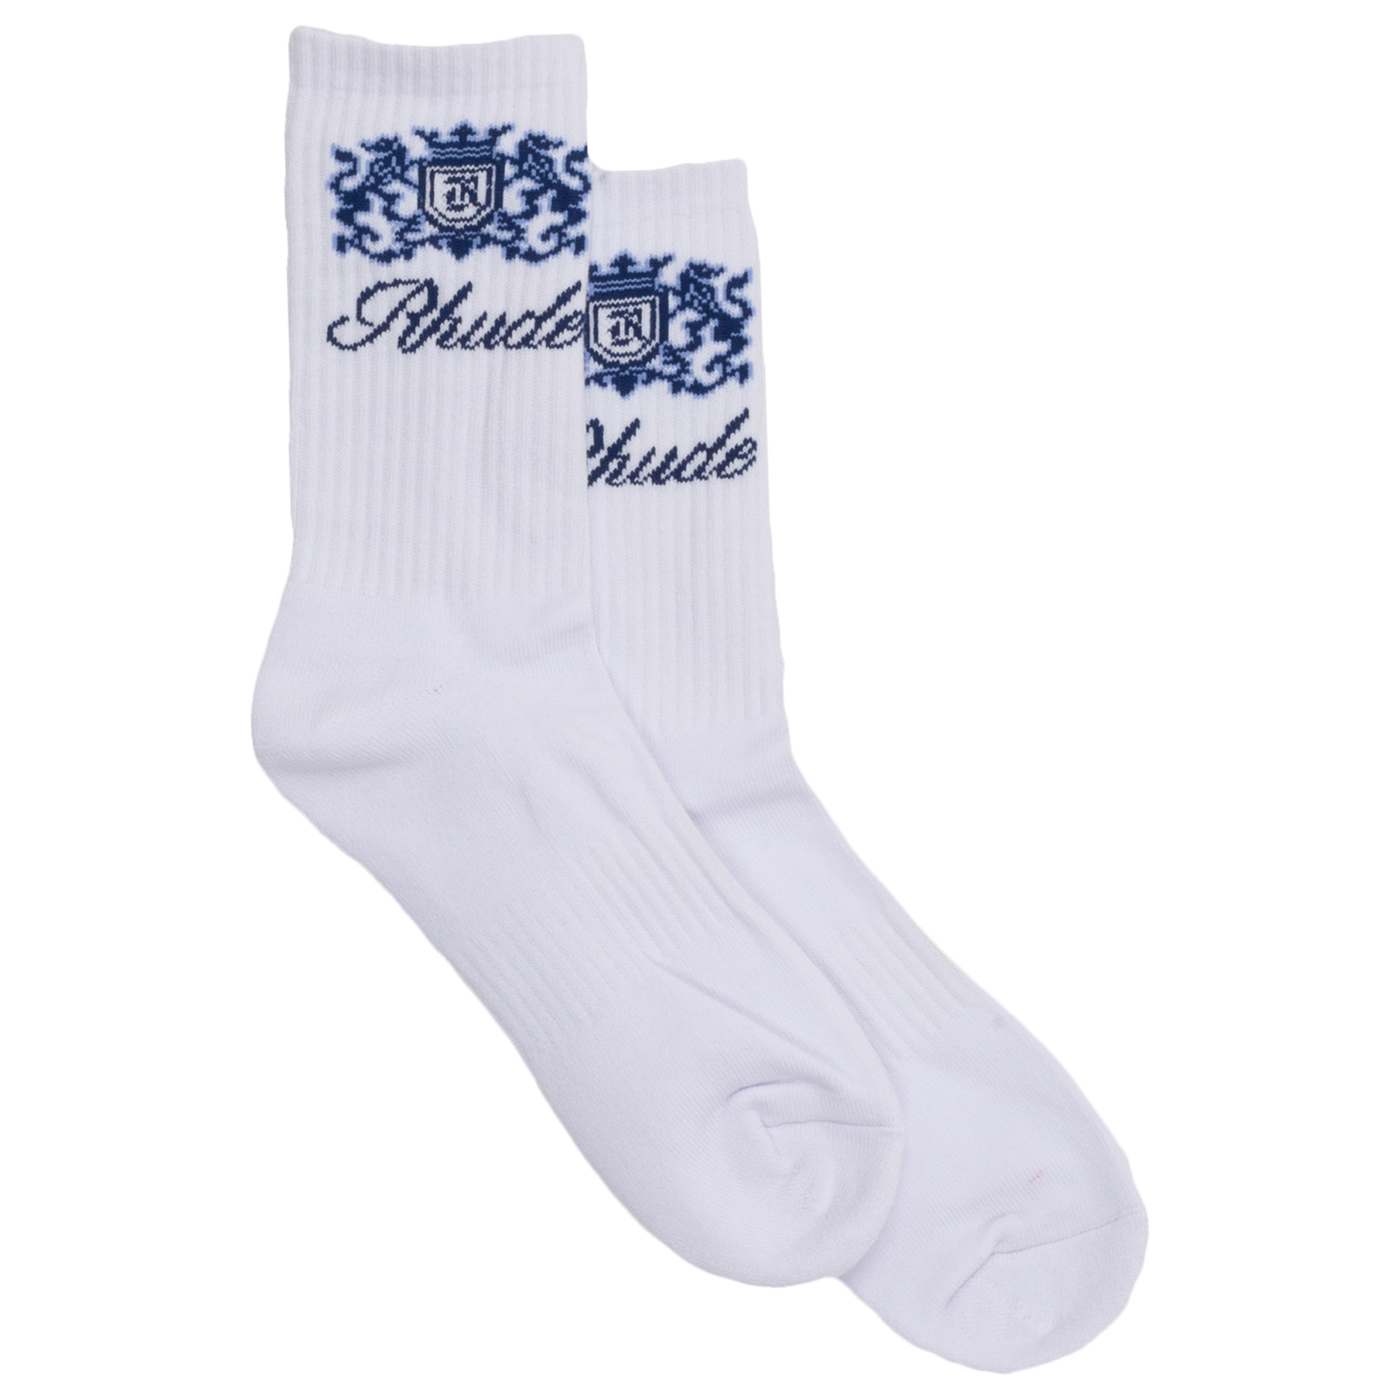 RHUDE Crest Logo Sock